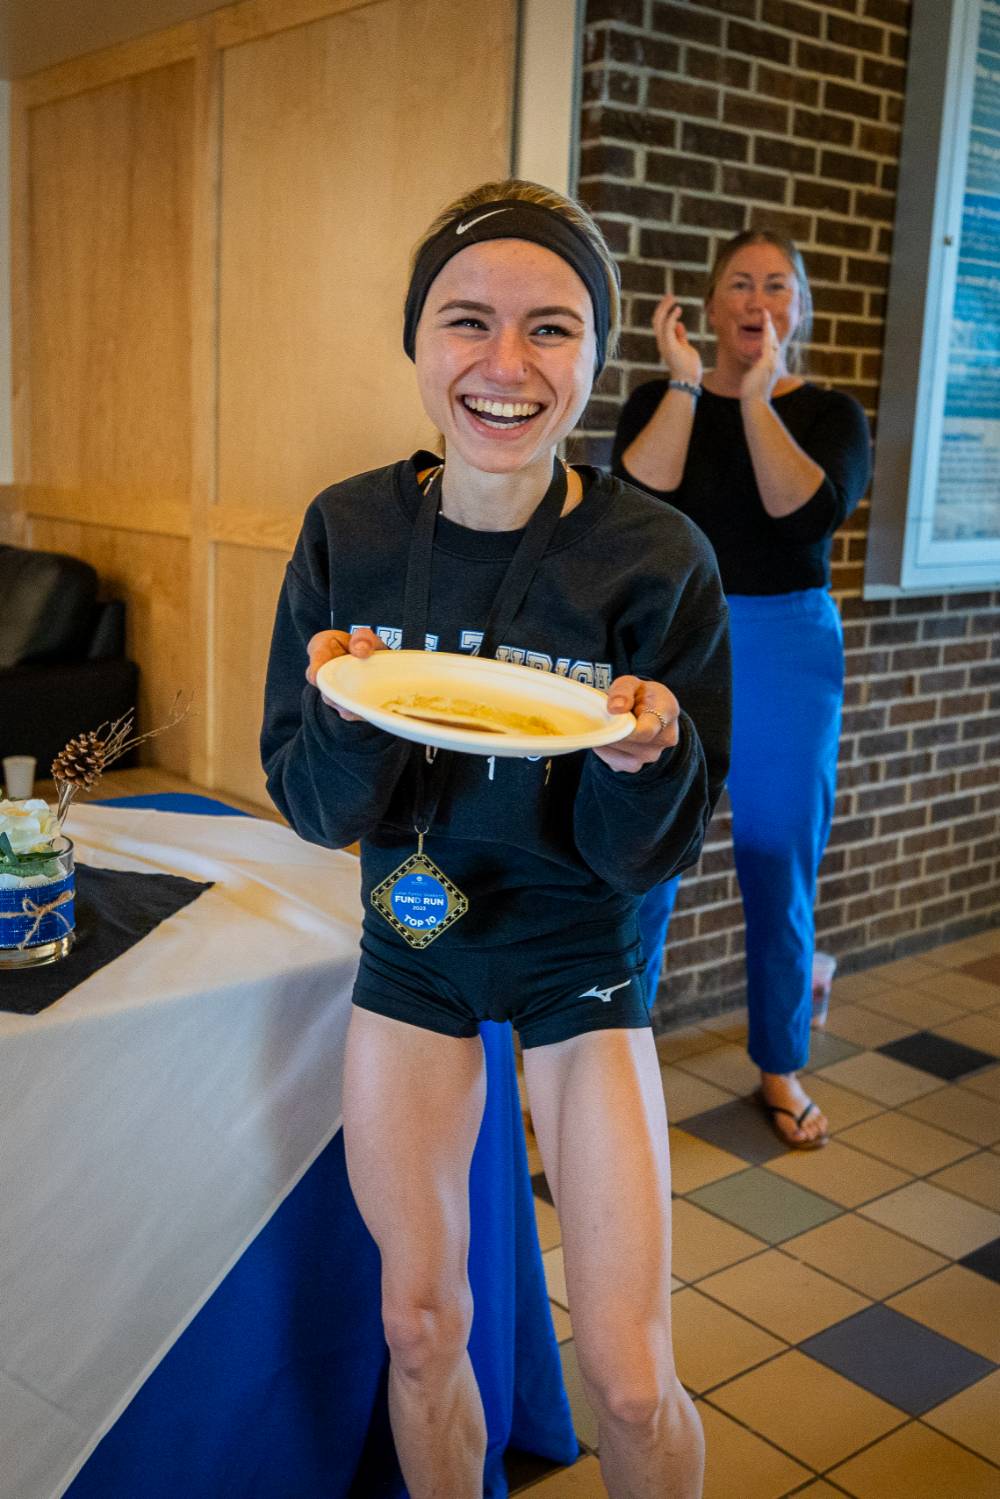 Student showing off pancake during pancake breakfast.